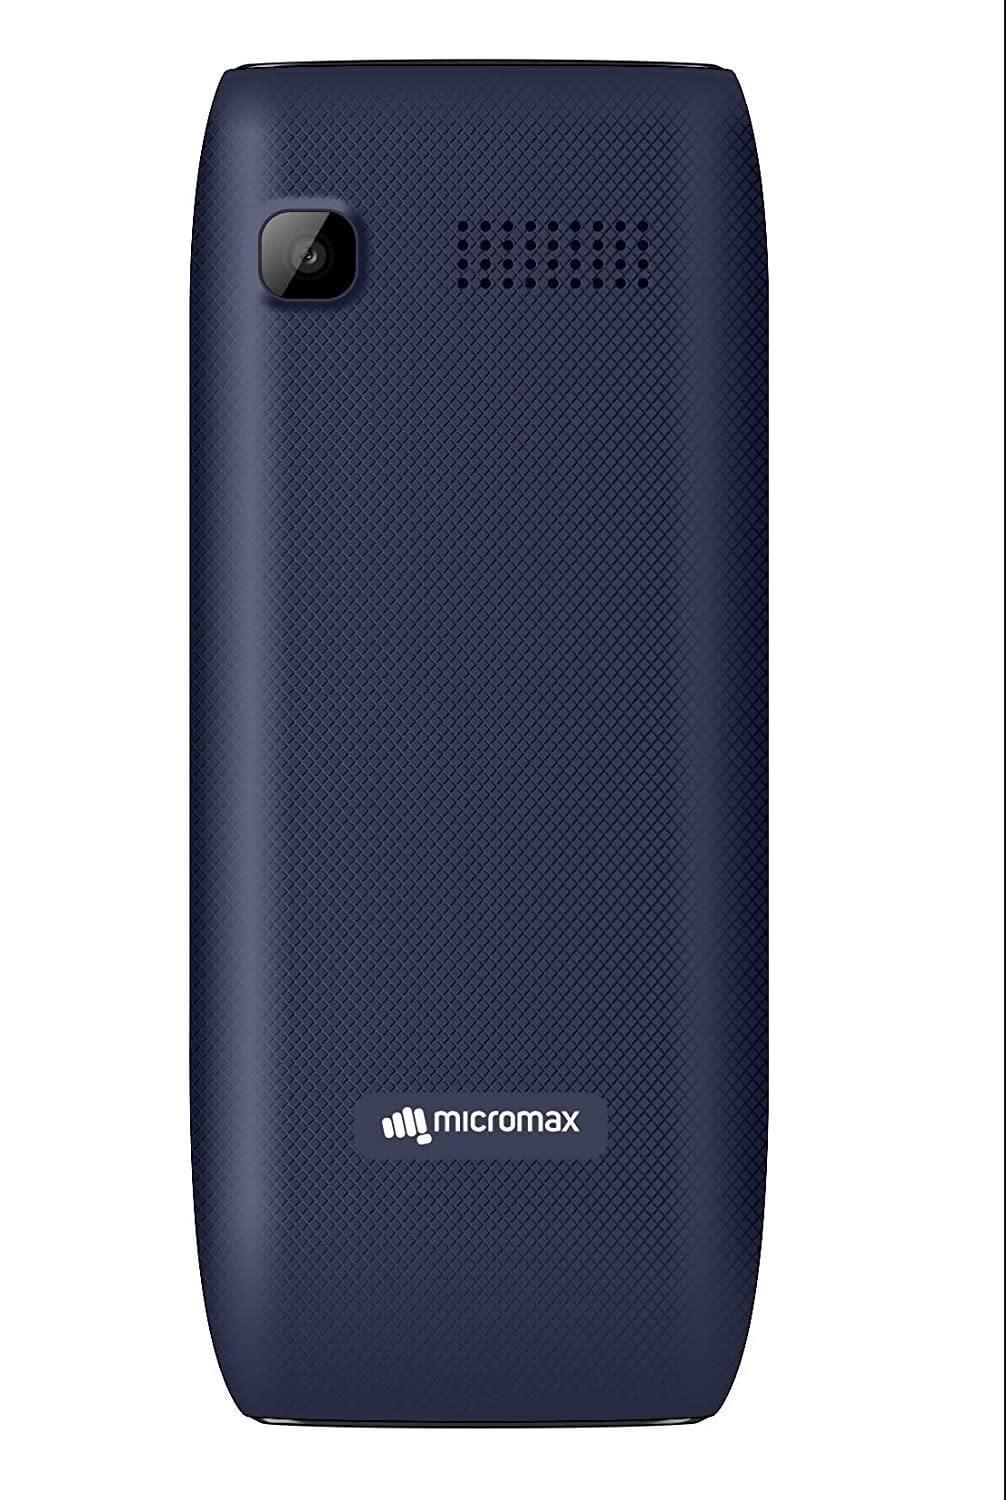 Micromax X746-Mobile Phones-dealsplant